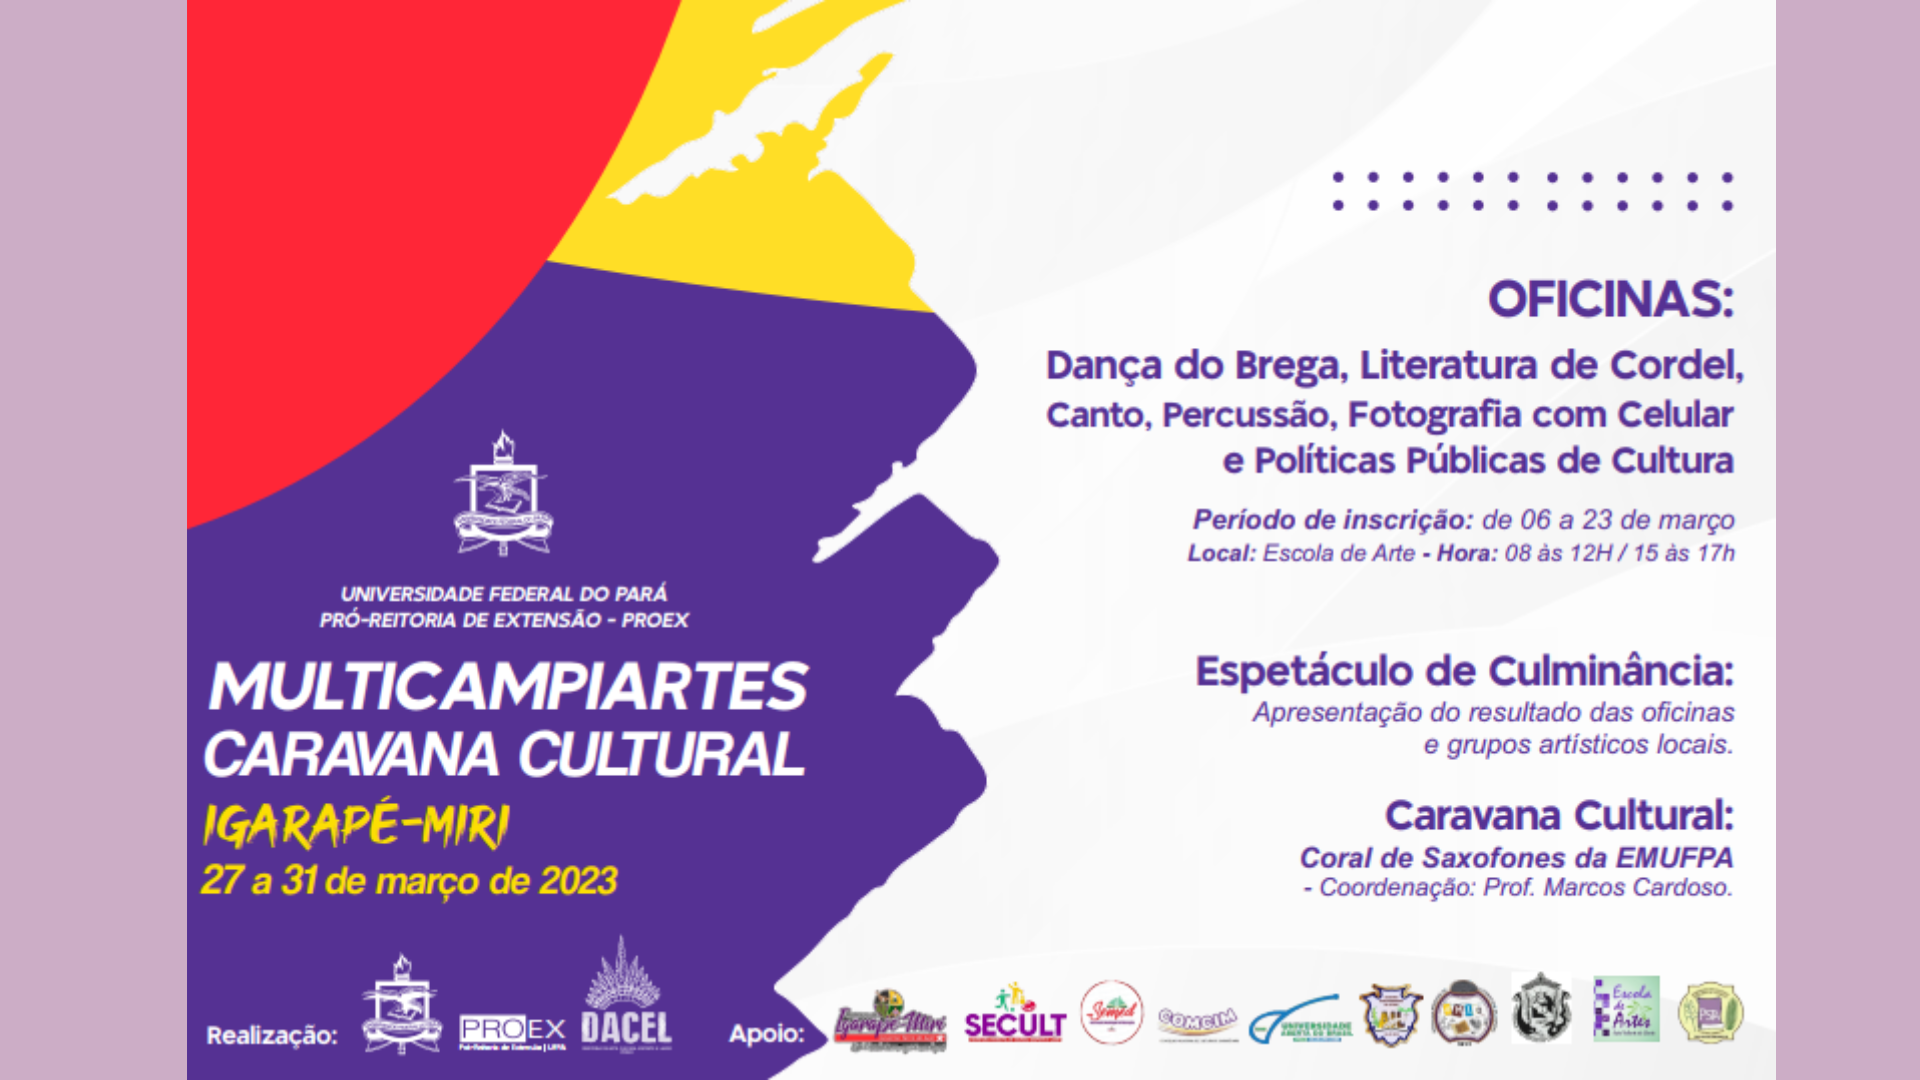 Multicampiartes Caravana Cultural UFPA -Iguarapé-Mirí